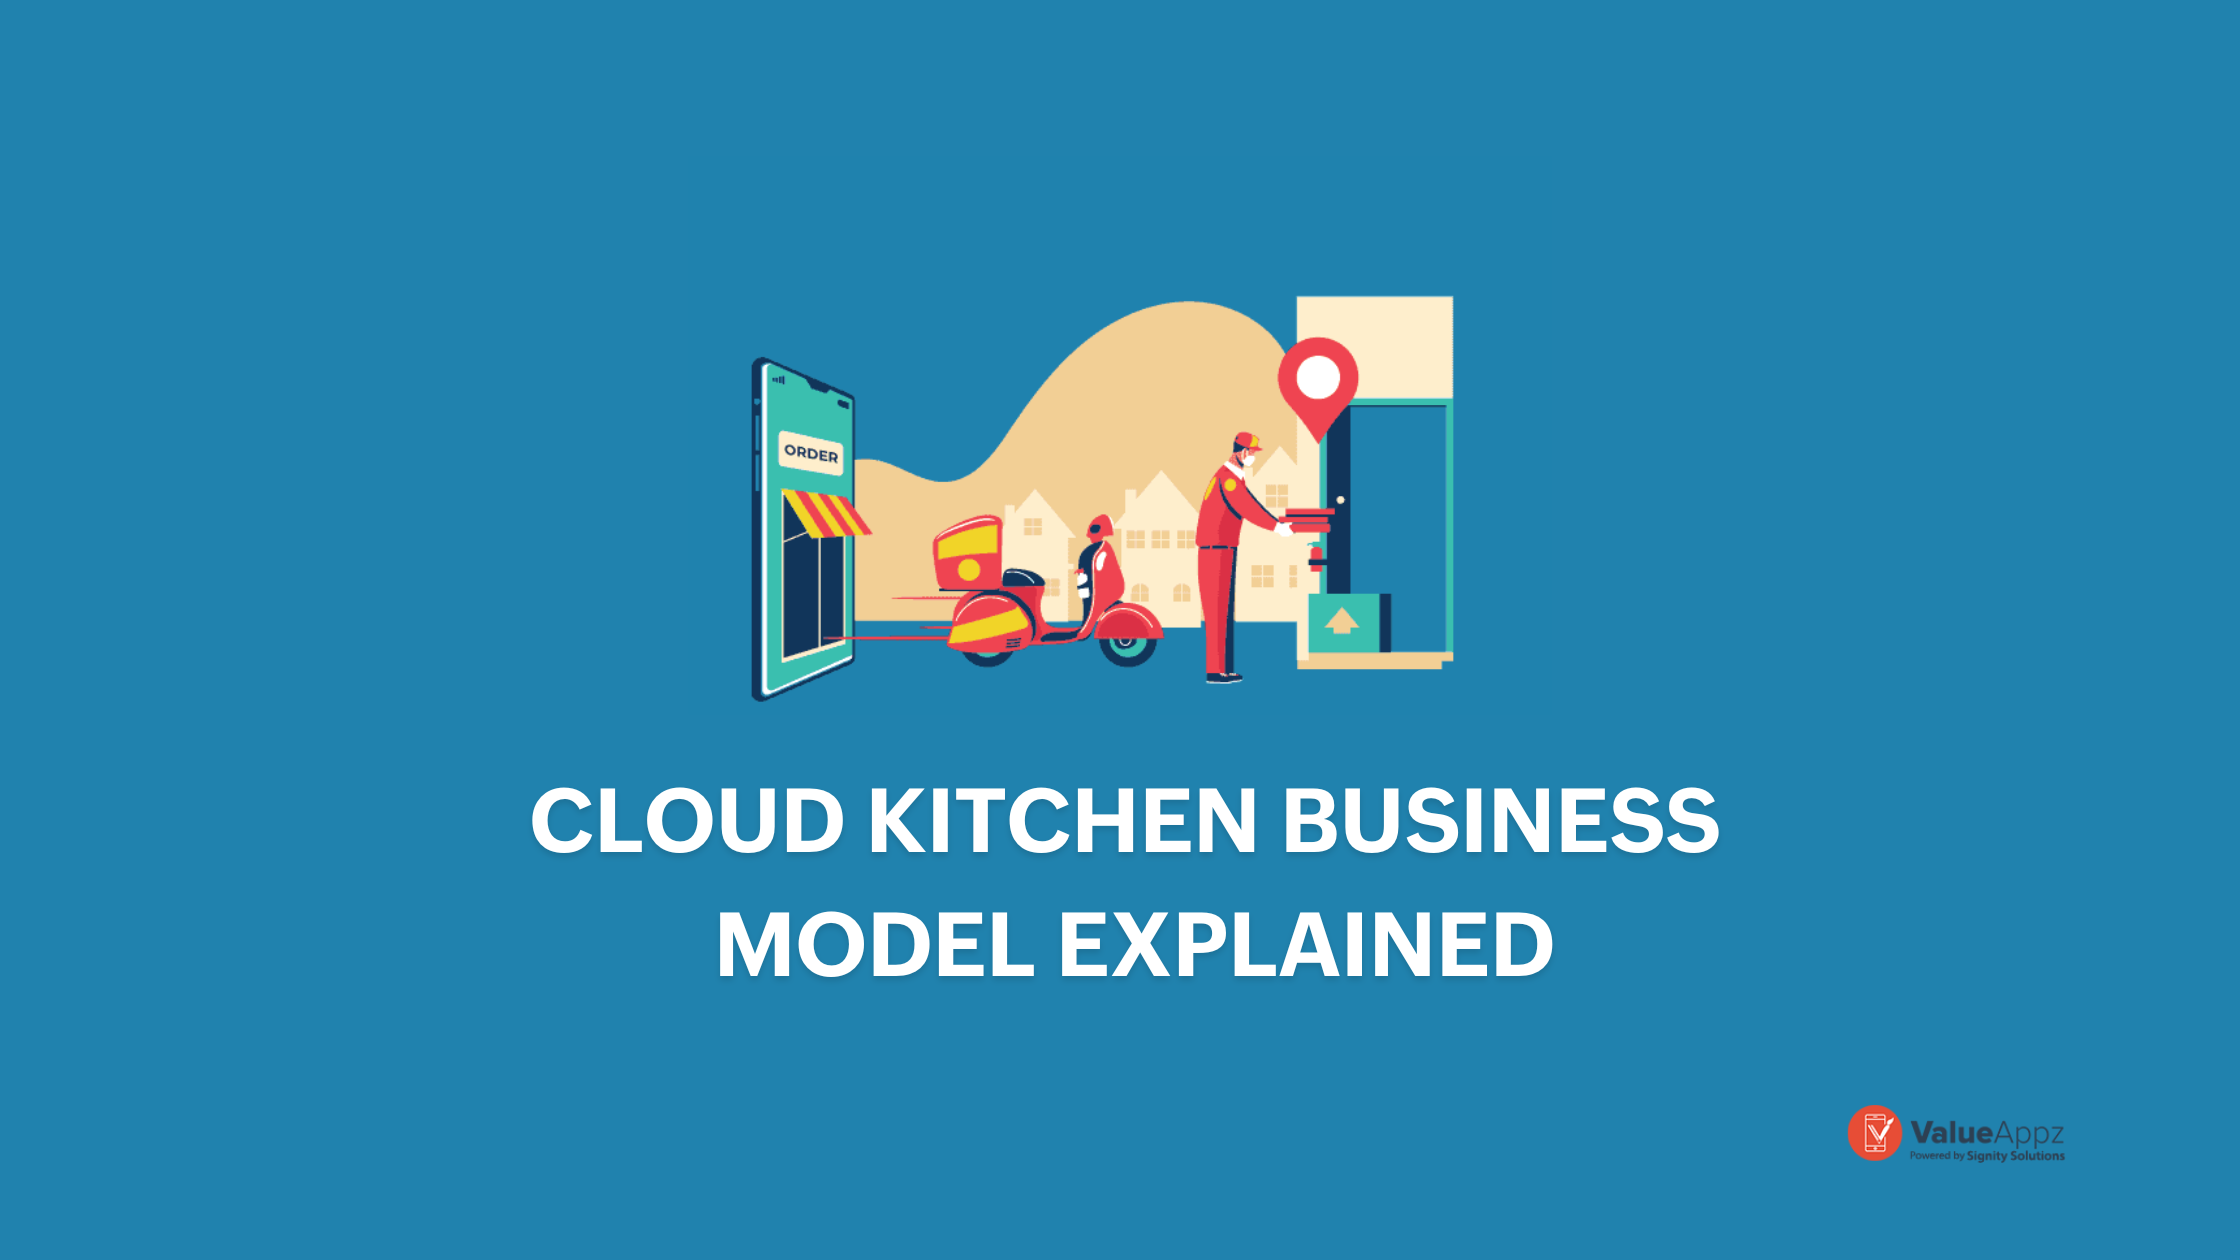 Cloud Kitchen Business Models Explained - ValueAppz